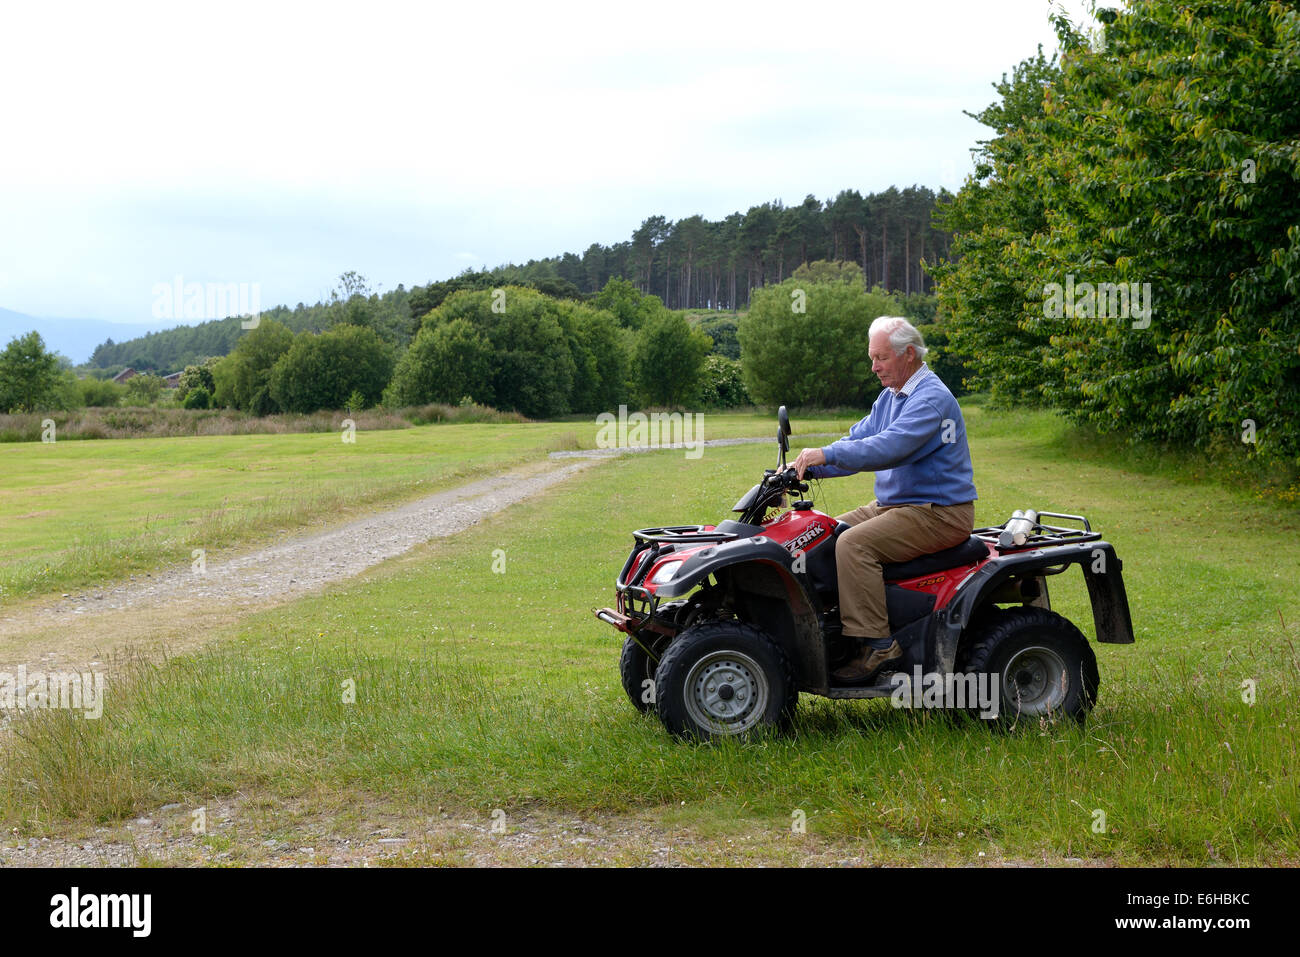 A senior man riding an all terrain vehicle Stock Photo